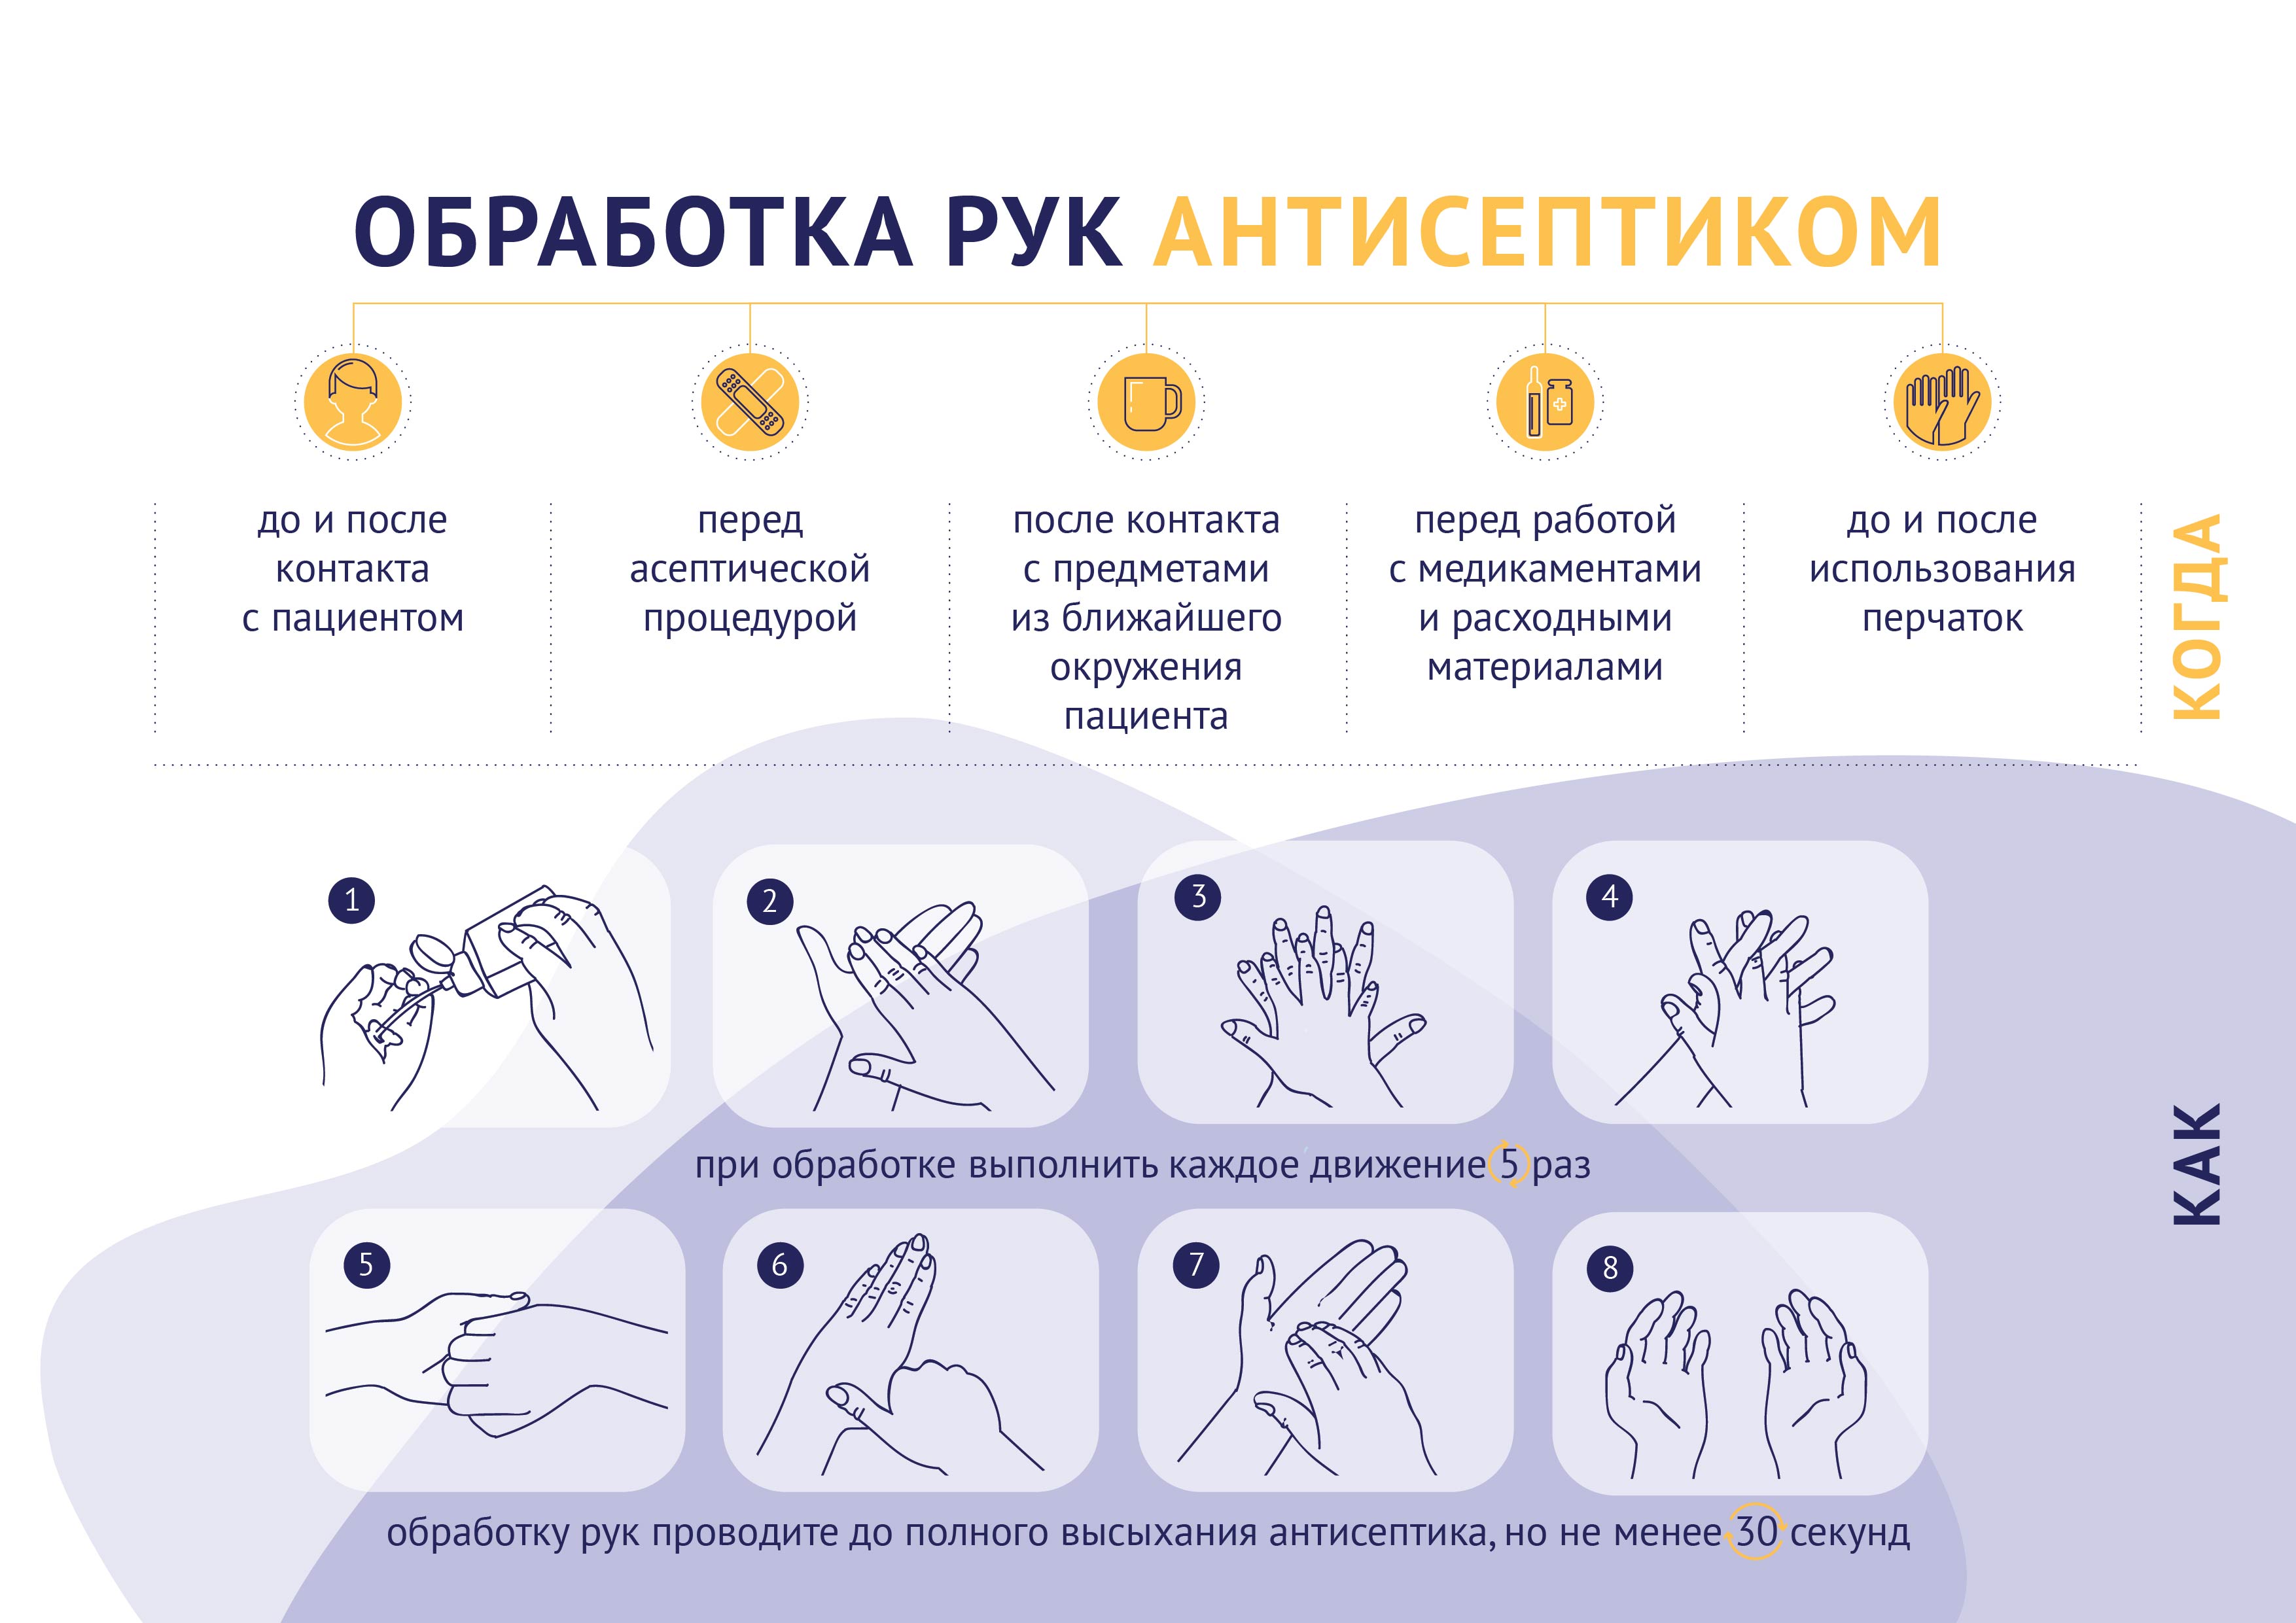 Температура при мытье рук должна быть. Памятка обработать руки антисептиком. Памятка обработка рук антисептиком при коронавирусе. Памятка по использованию антисептика для рук. Схема обработки рук кожным антисептиком.